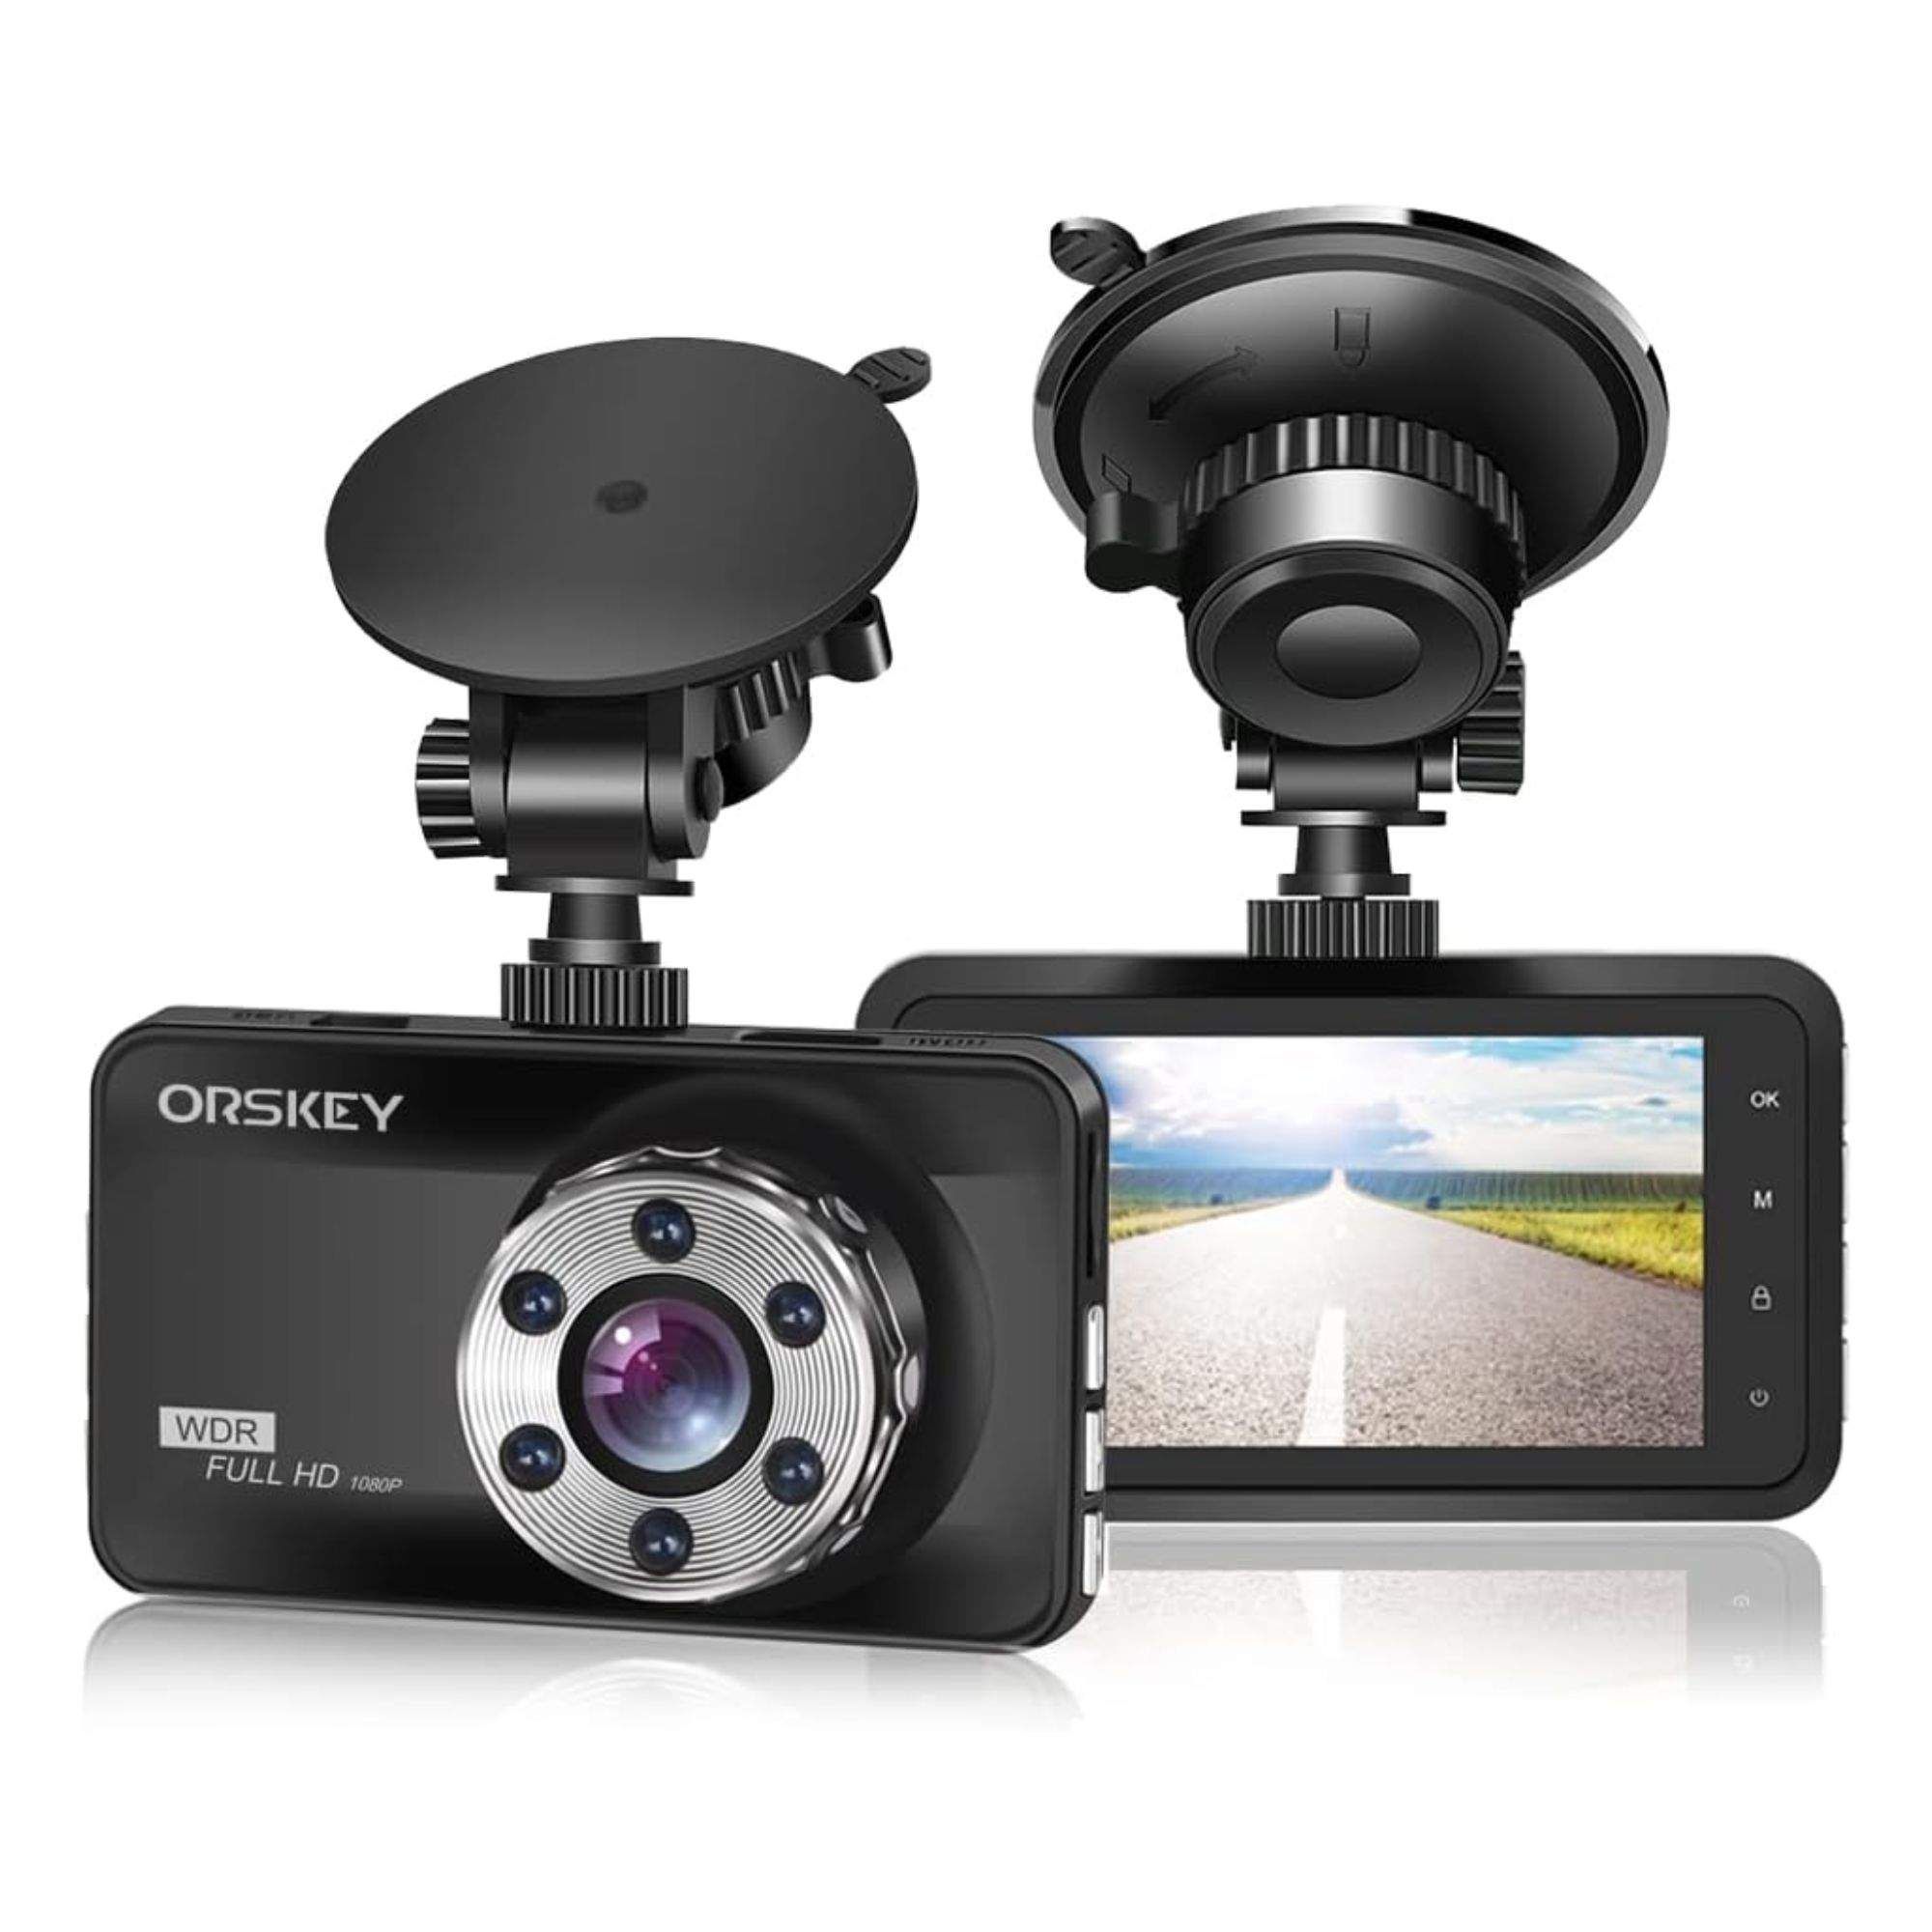 Con esta cámara para tu coche podrás grabar todo tipo de infracciones y accidentes en HD a mitad de precio